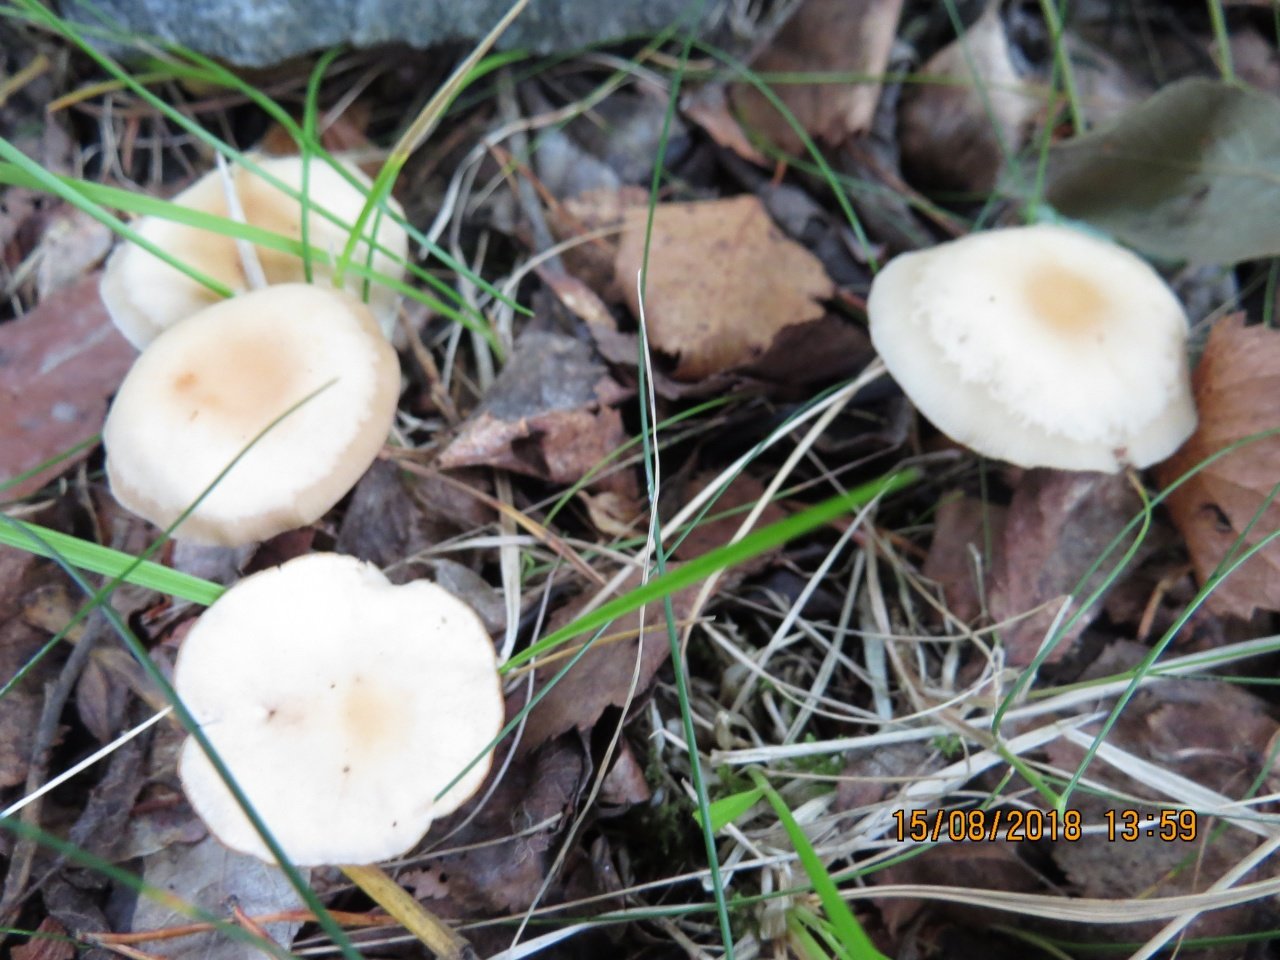 Выращивание грибов опят агроцибе или тополиных опят в домашних условиях / съедобные грибы, ягоды, травы